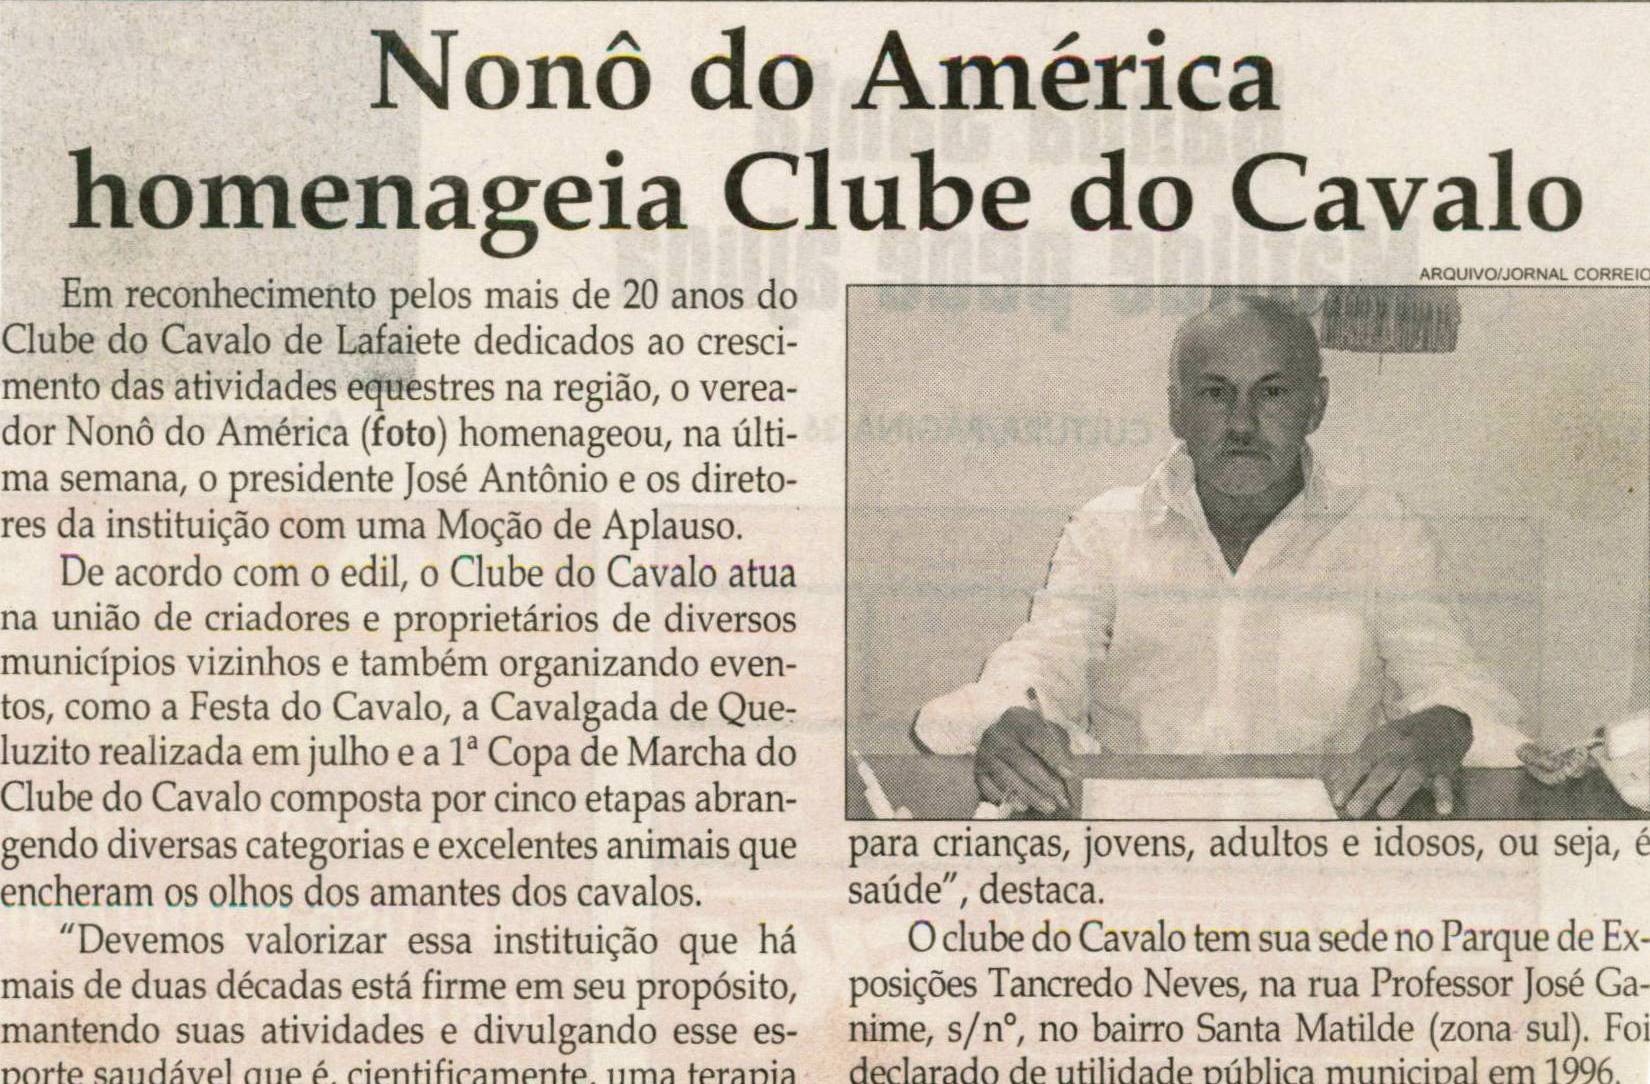 Nonô do América homenageia Clube do Cavalo. Jornal Correio da Cidade, Conselheiro Lafaiete, 30 out. 2010, p. 2.